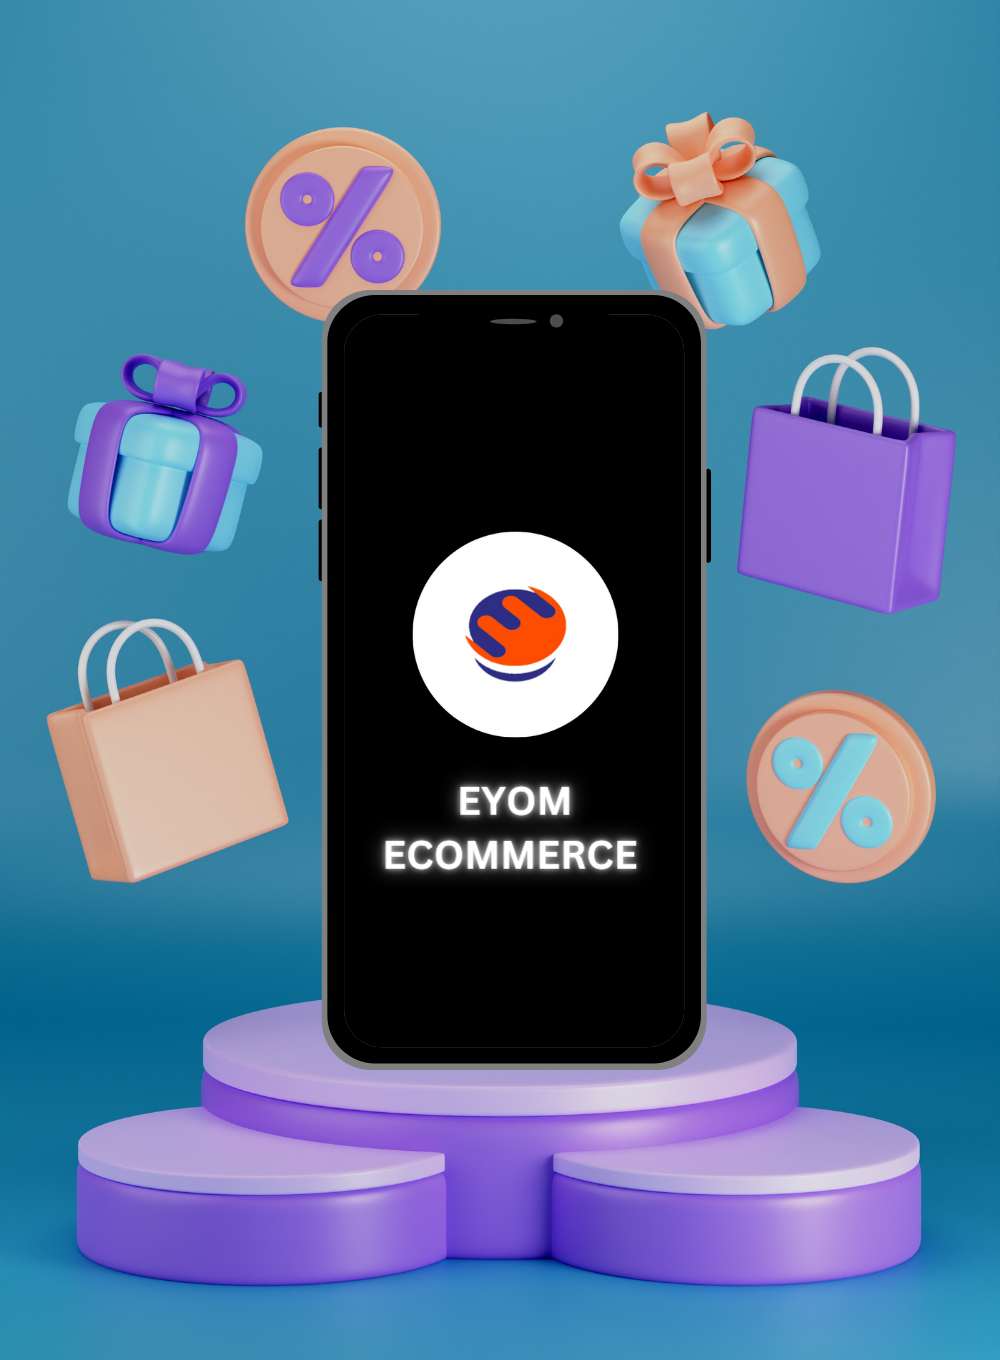 Eyom- Ecommerce